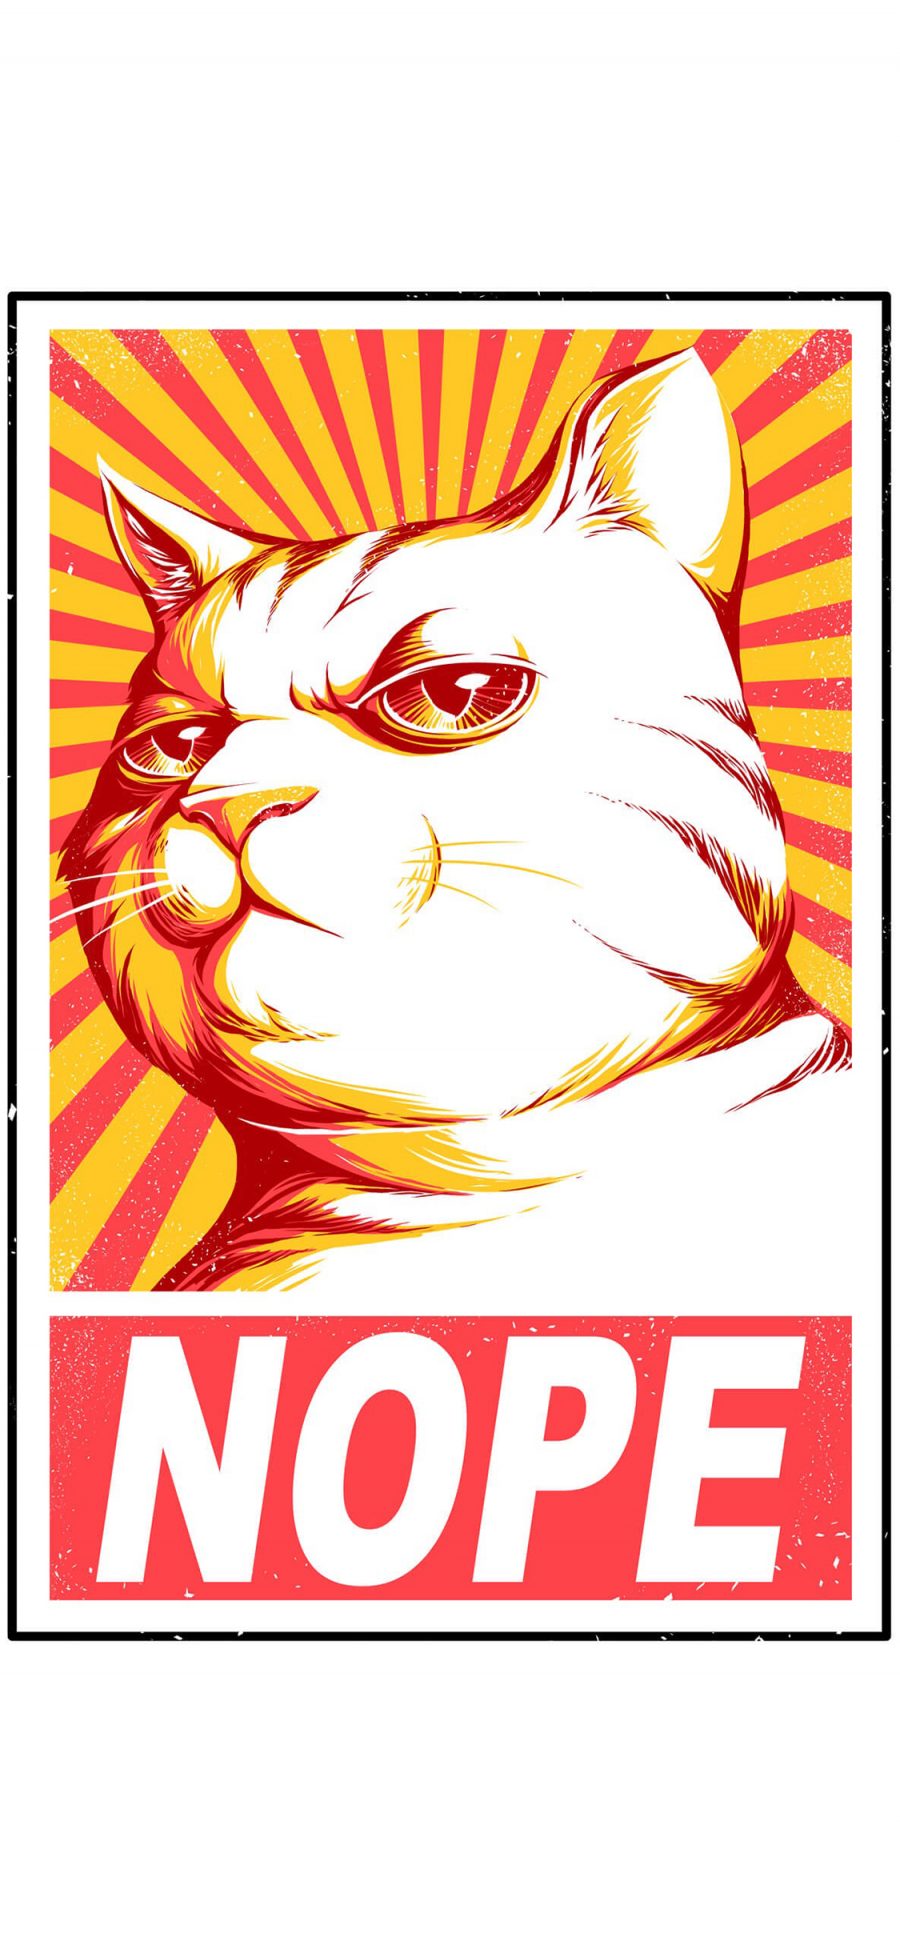 [2436×1125]猫 nope 创意 拟人 苹果手机动漫壁纸图片